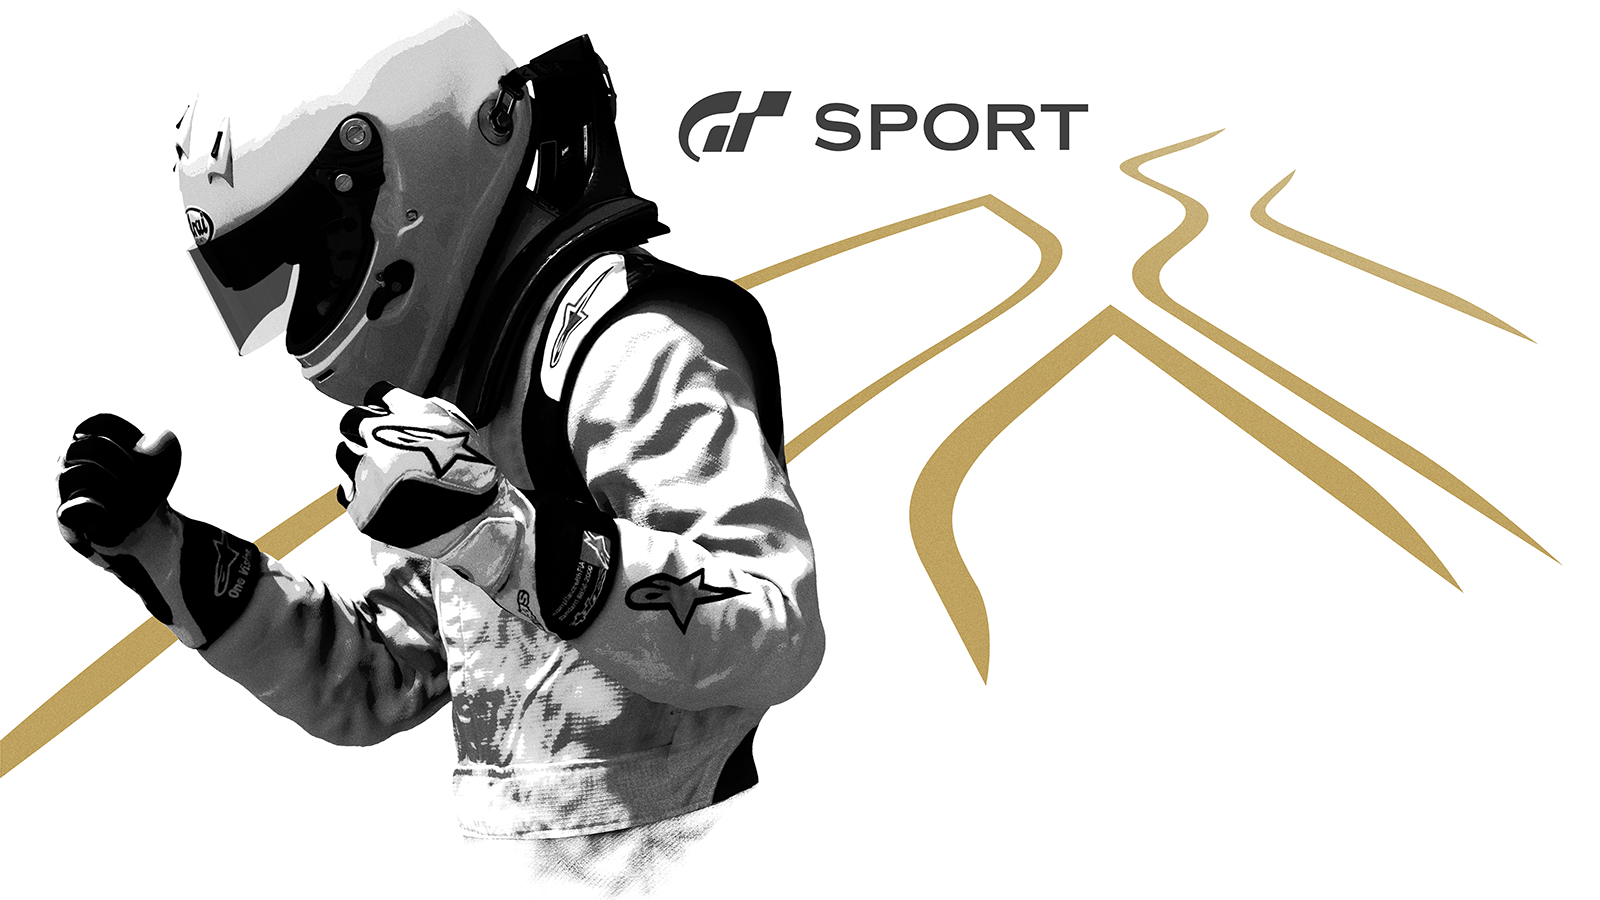 Cerca de los 4 millones de usuarios para GT Sport